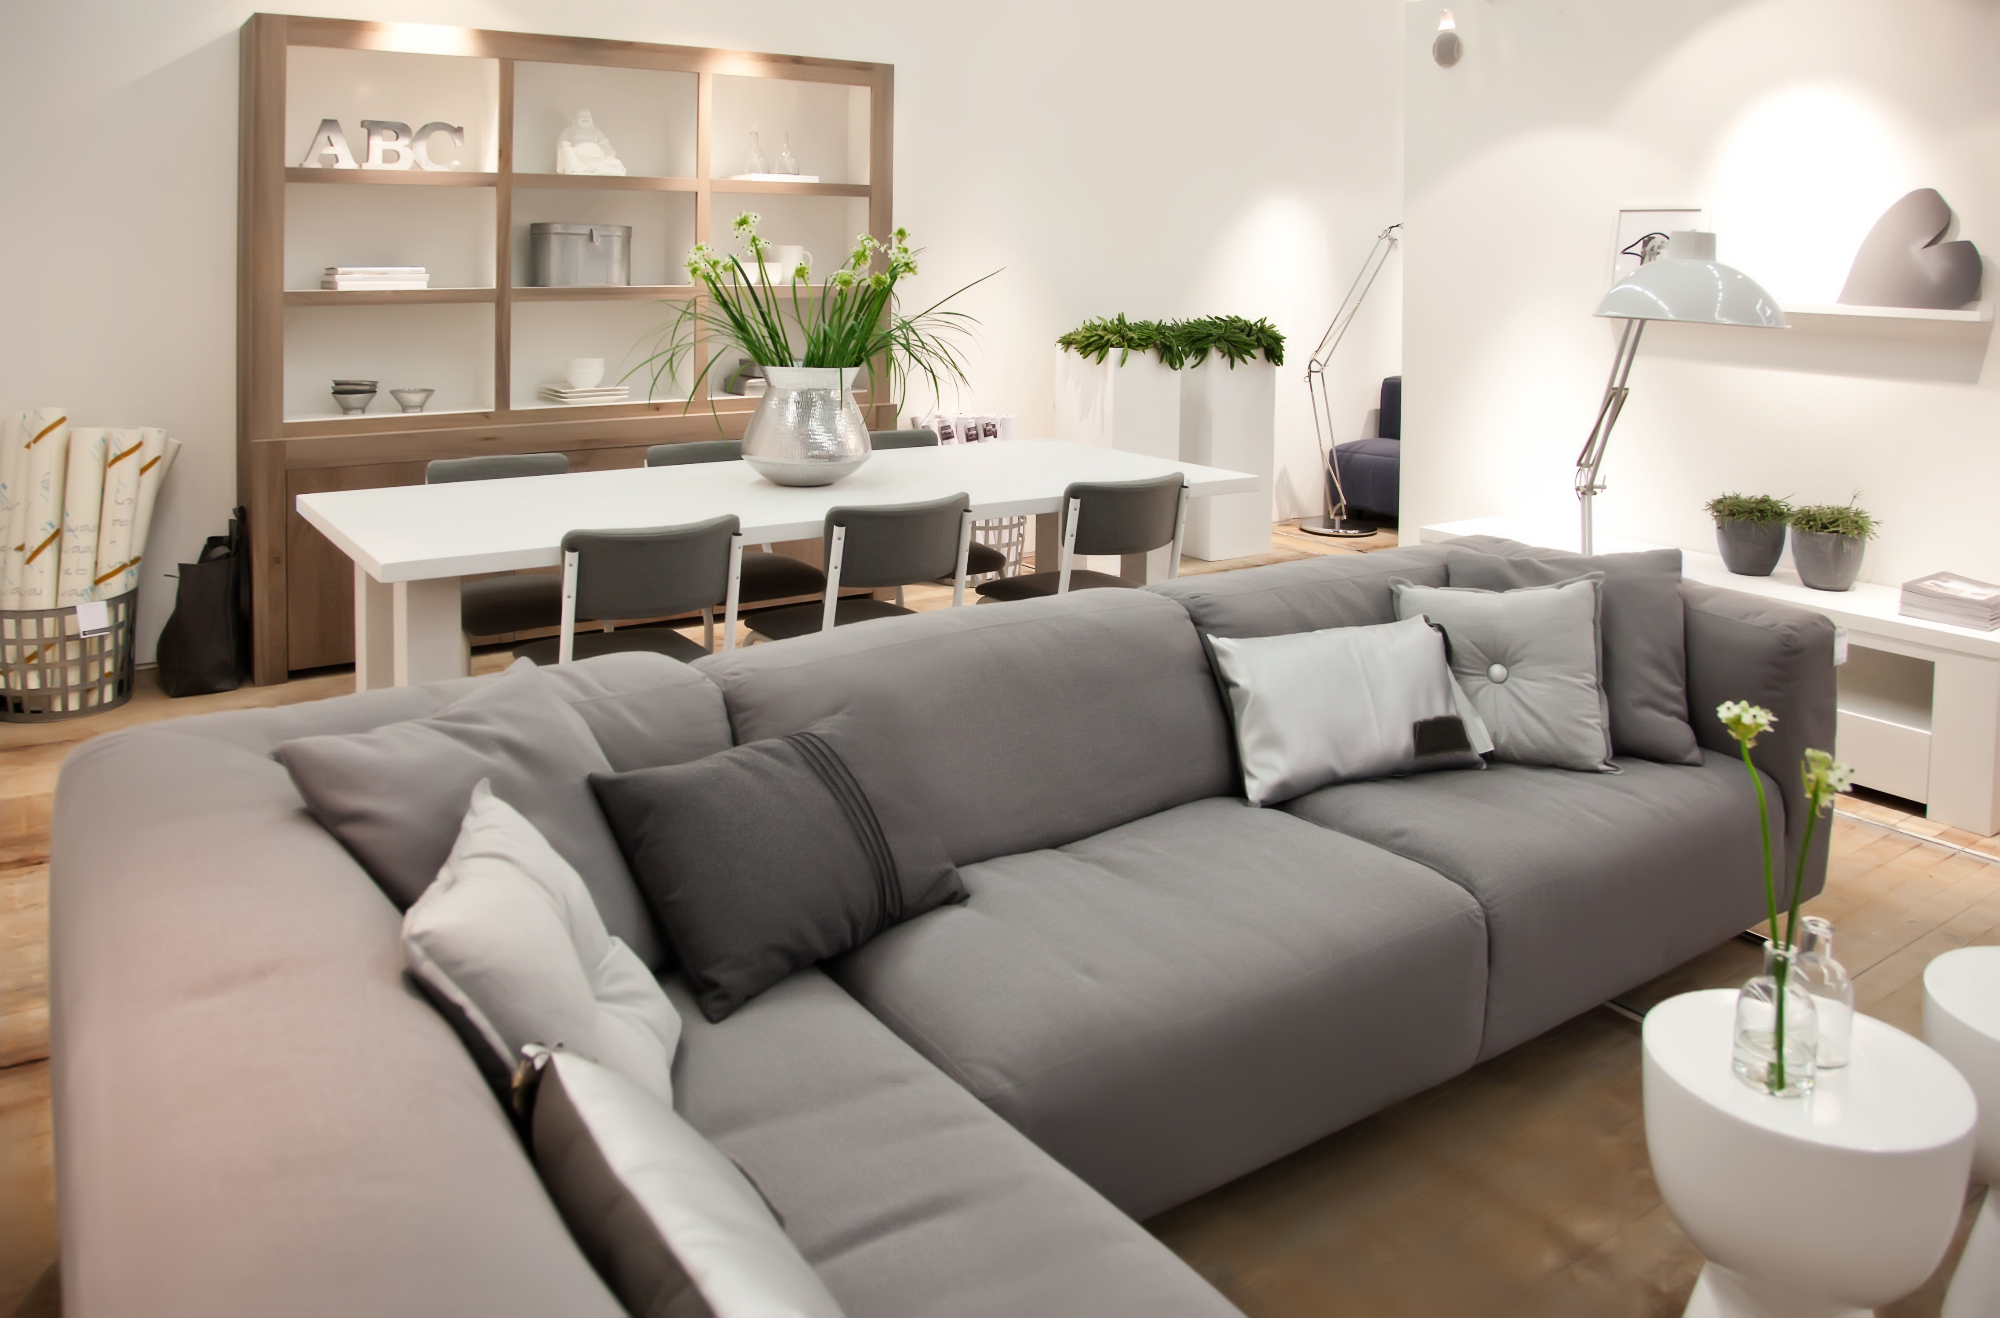 V našem stanovanju je pohištvo pomembno za udobje in estetski videz stanovanja